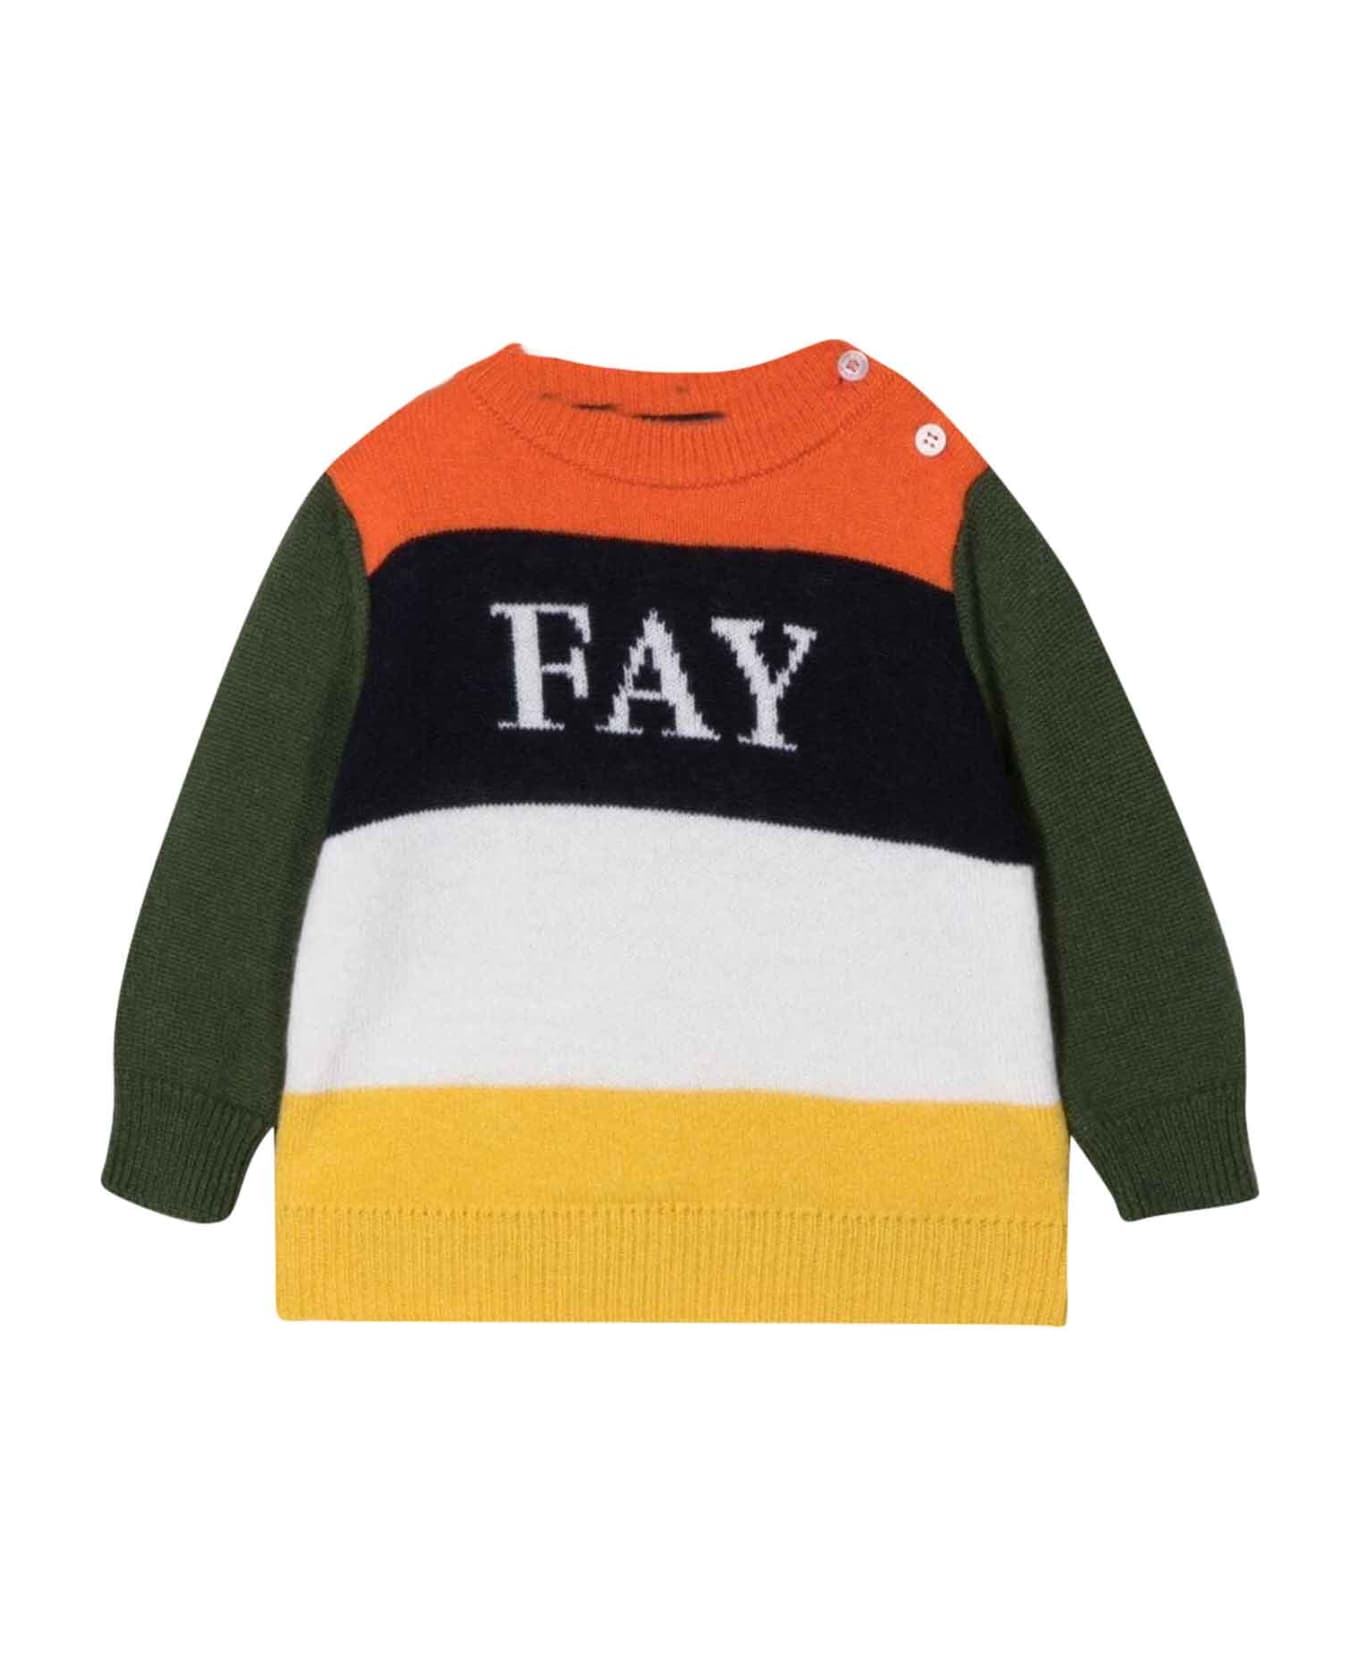 Fay Multicolor Sweater Baby Boy - Multicolor